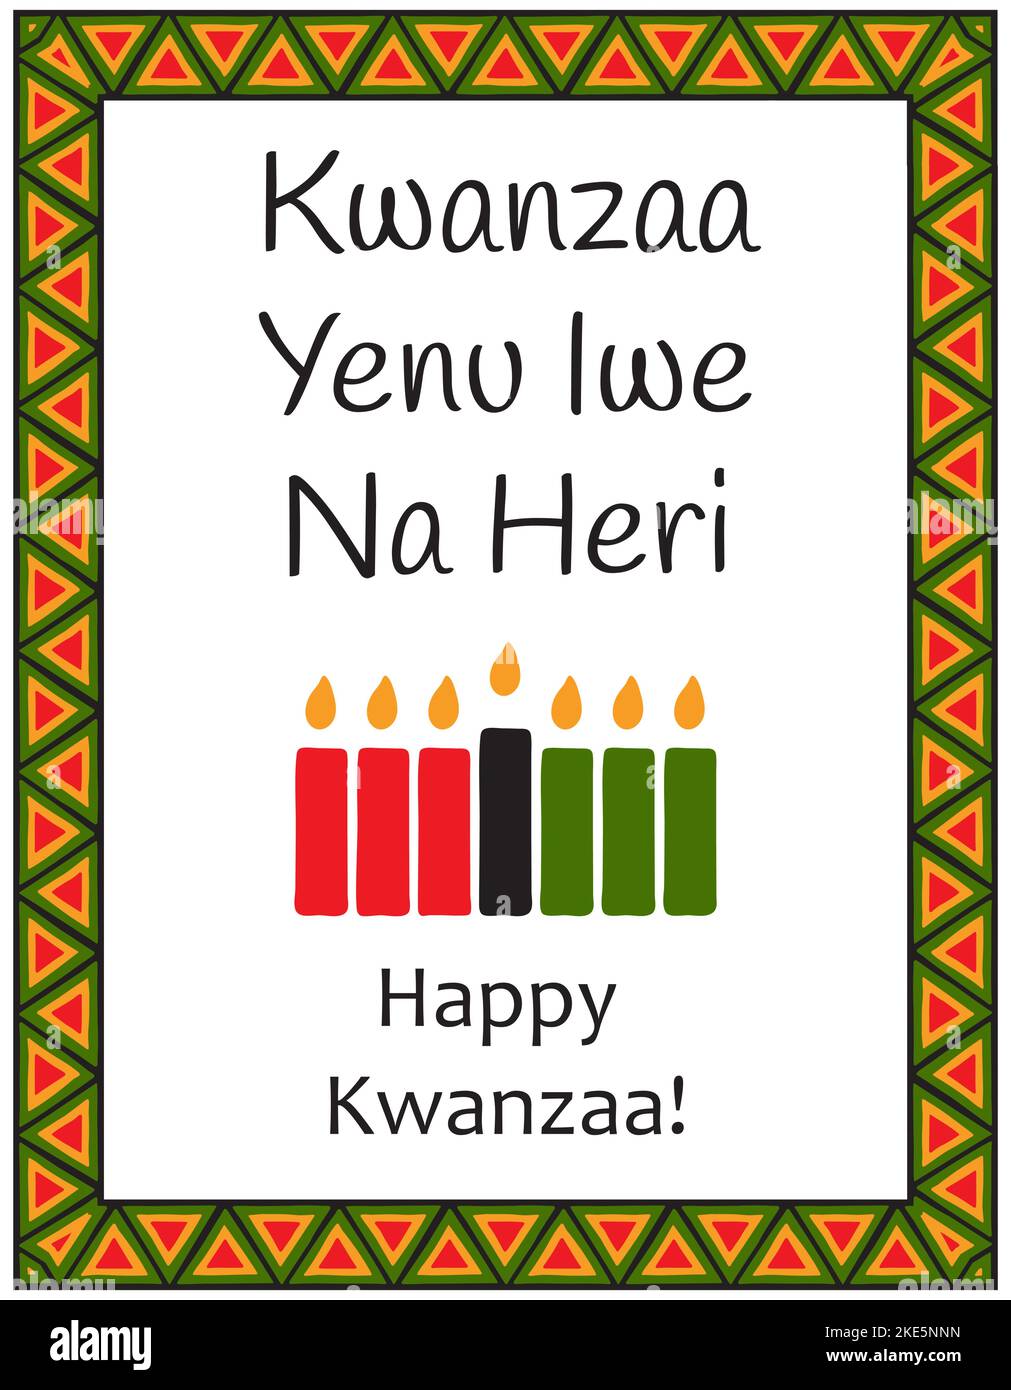 Carte aux sept bougies traditionnelles, symboles de Kwanzaa et mots - Kwanzaa Yenu IWE Na Heri - Happy Kwanzaa en swahili. Affiche avec PA ethnique africaine Illustration de Vecteur